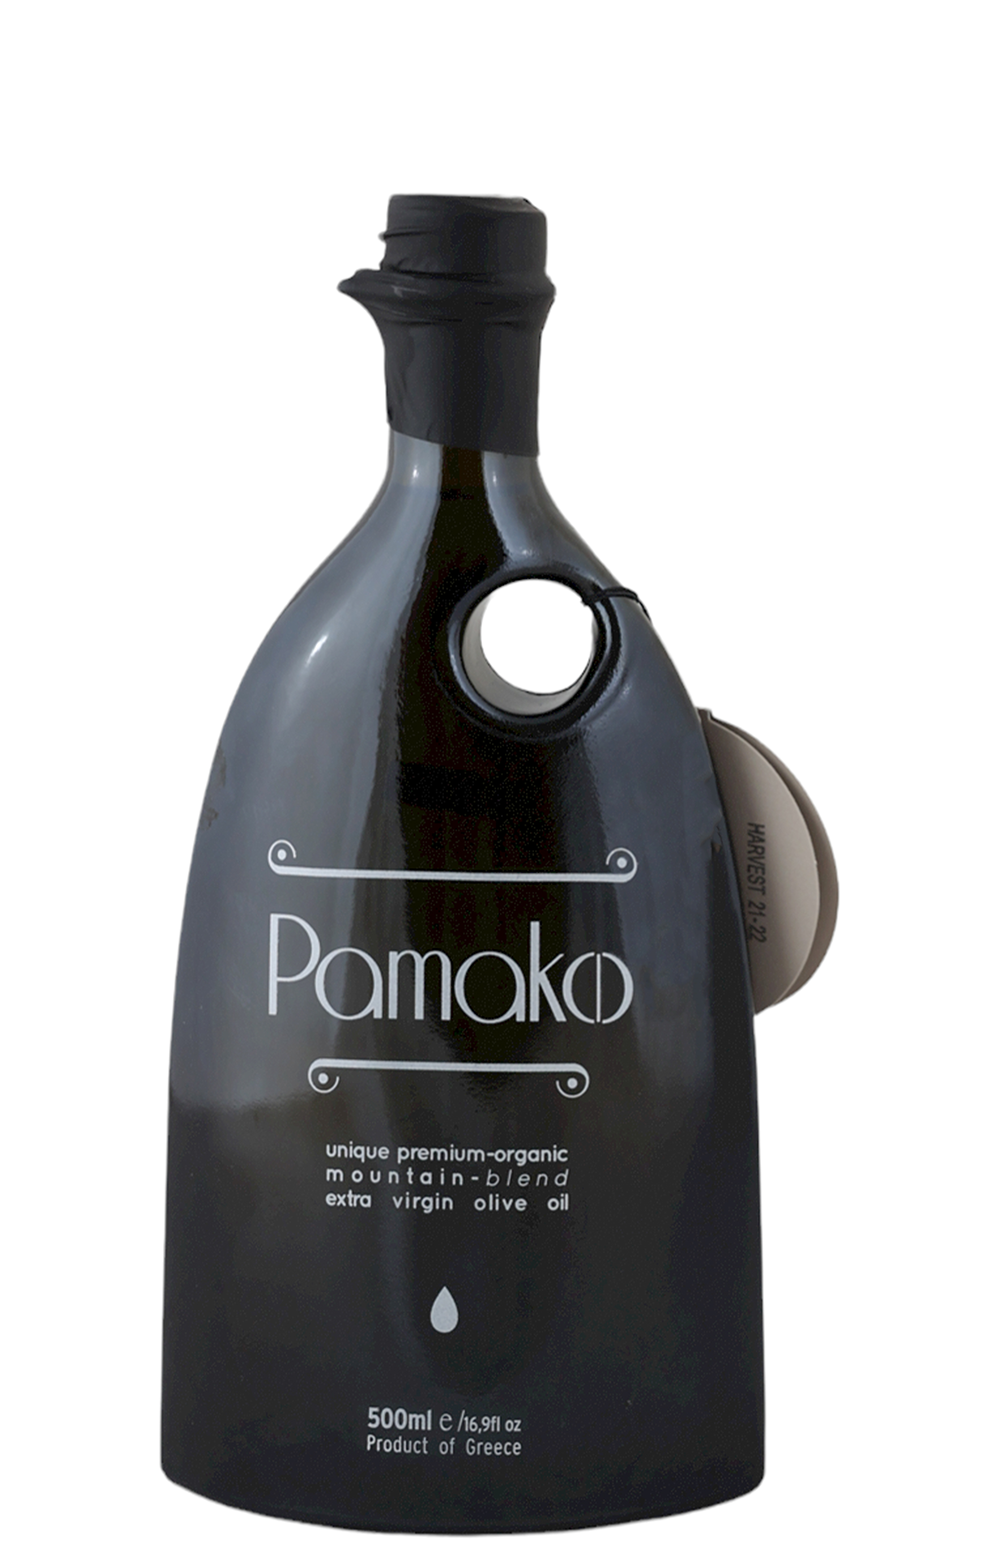 Pamako Organic Premium Blend